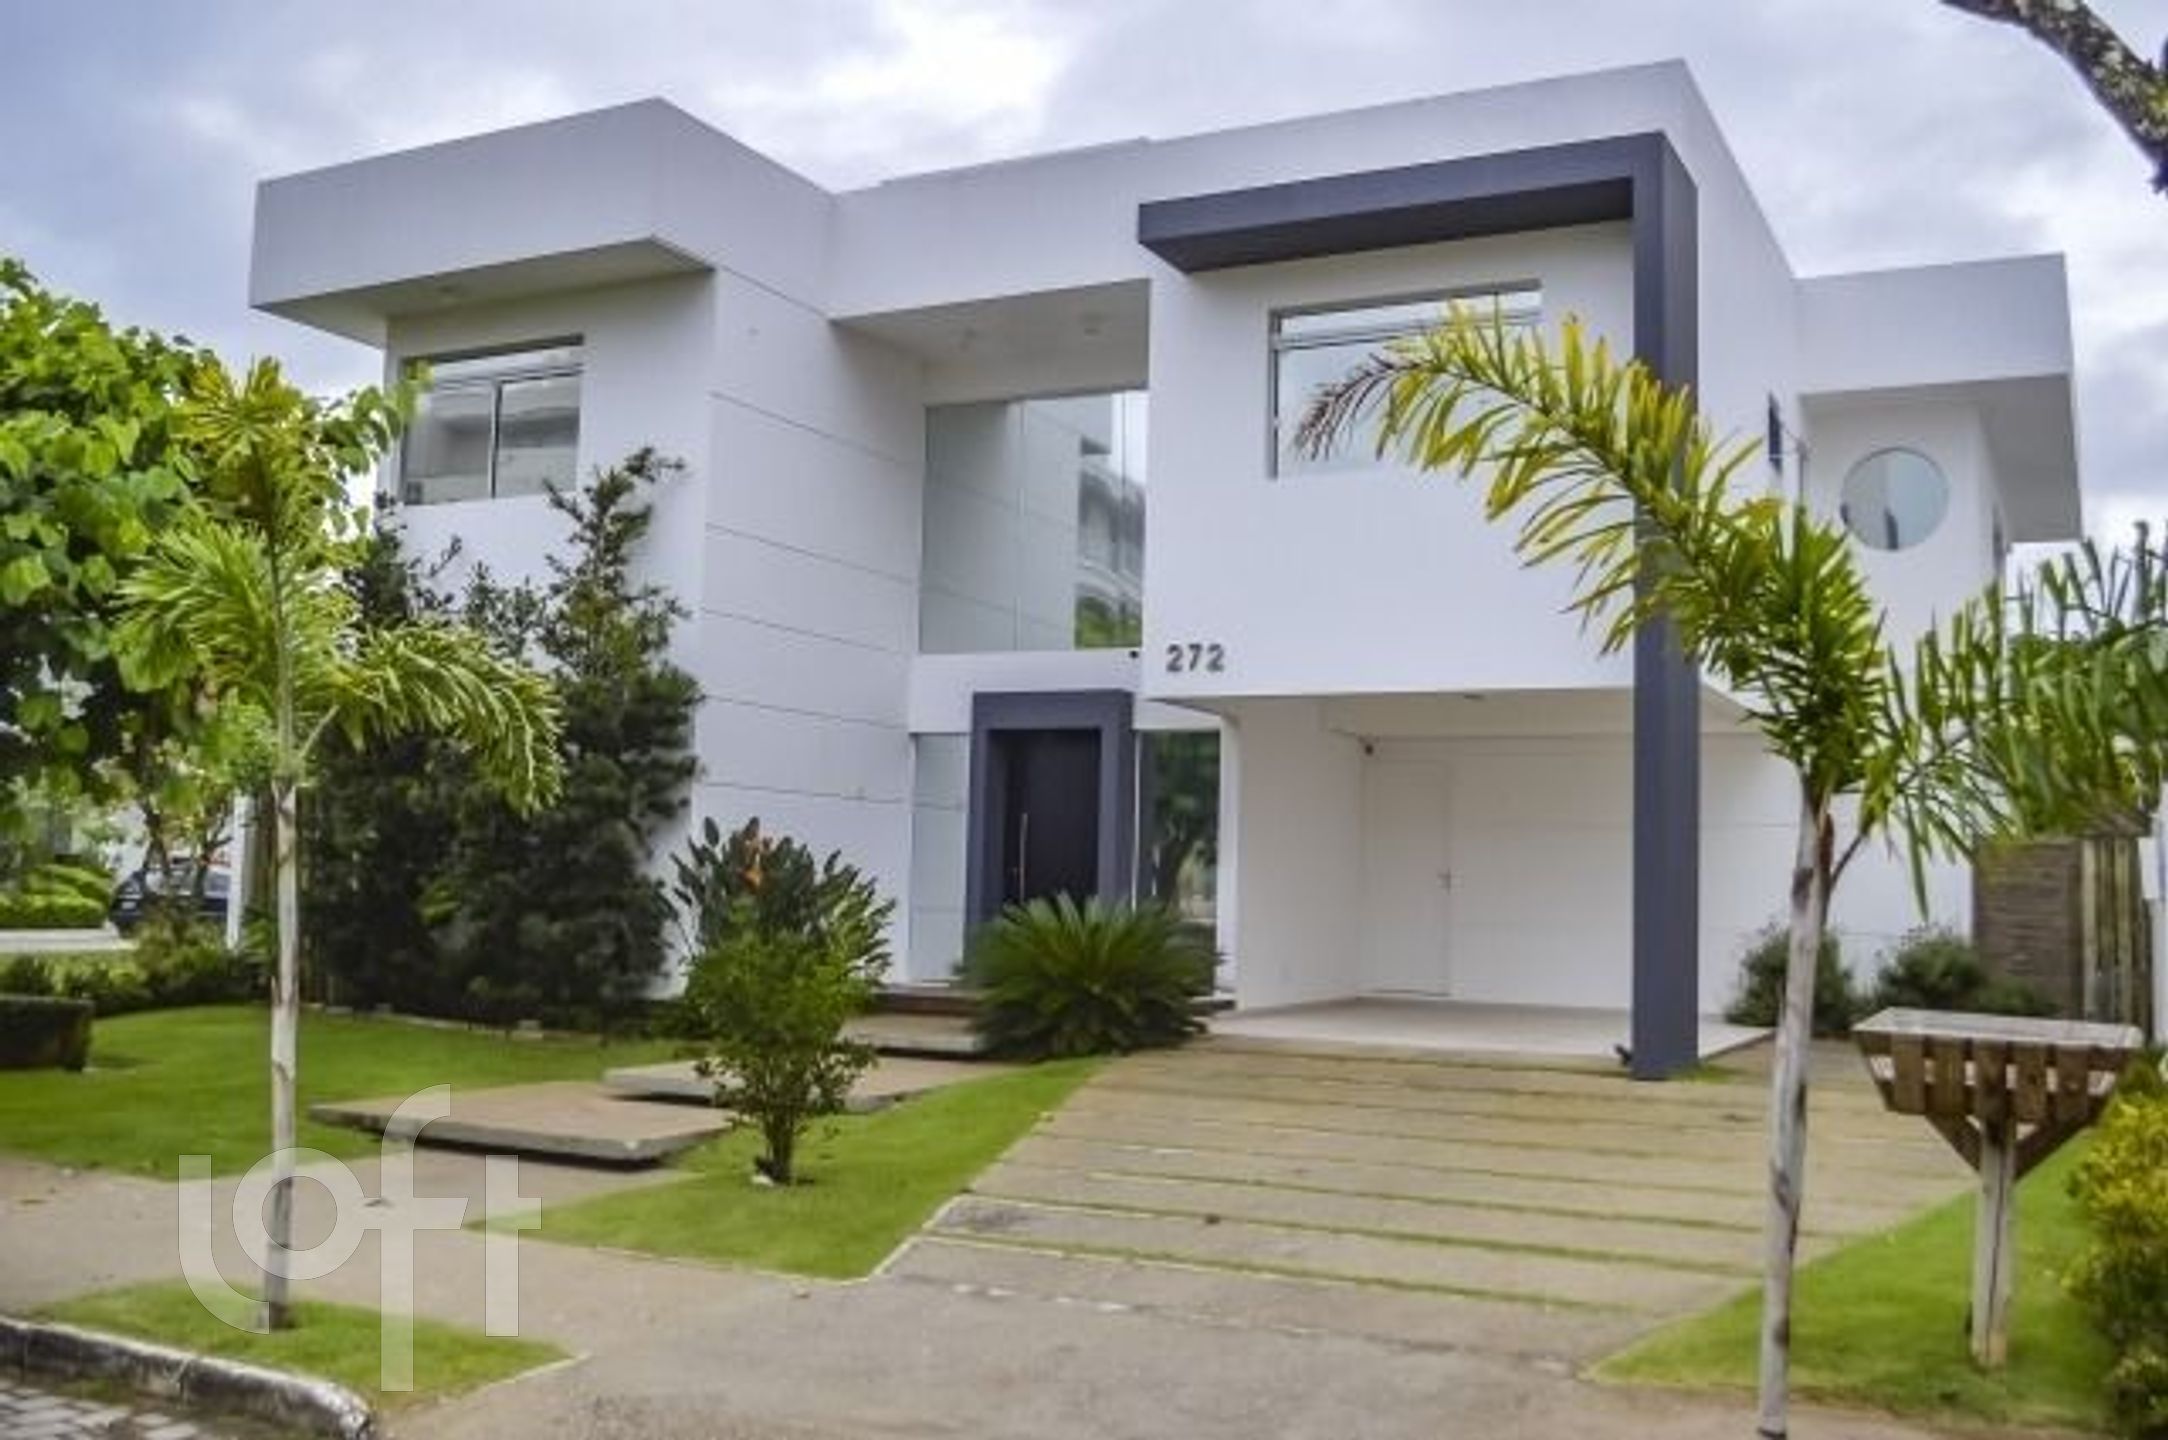 VENDA &#8211; Casa de 4 quartos no bairro Jurere Leste, Florianópolis &#8211; PU1ptc8bd